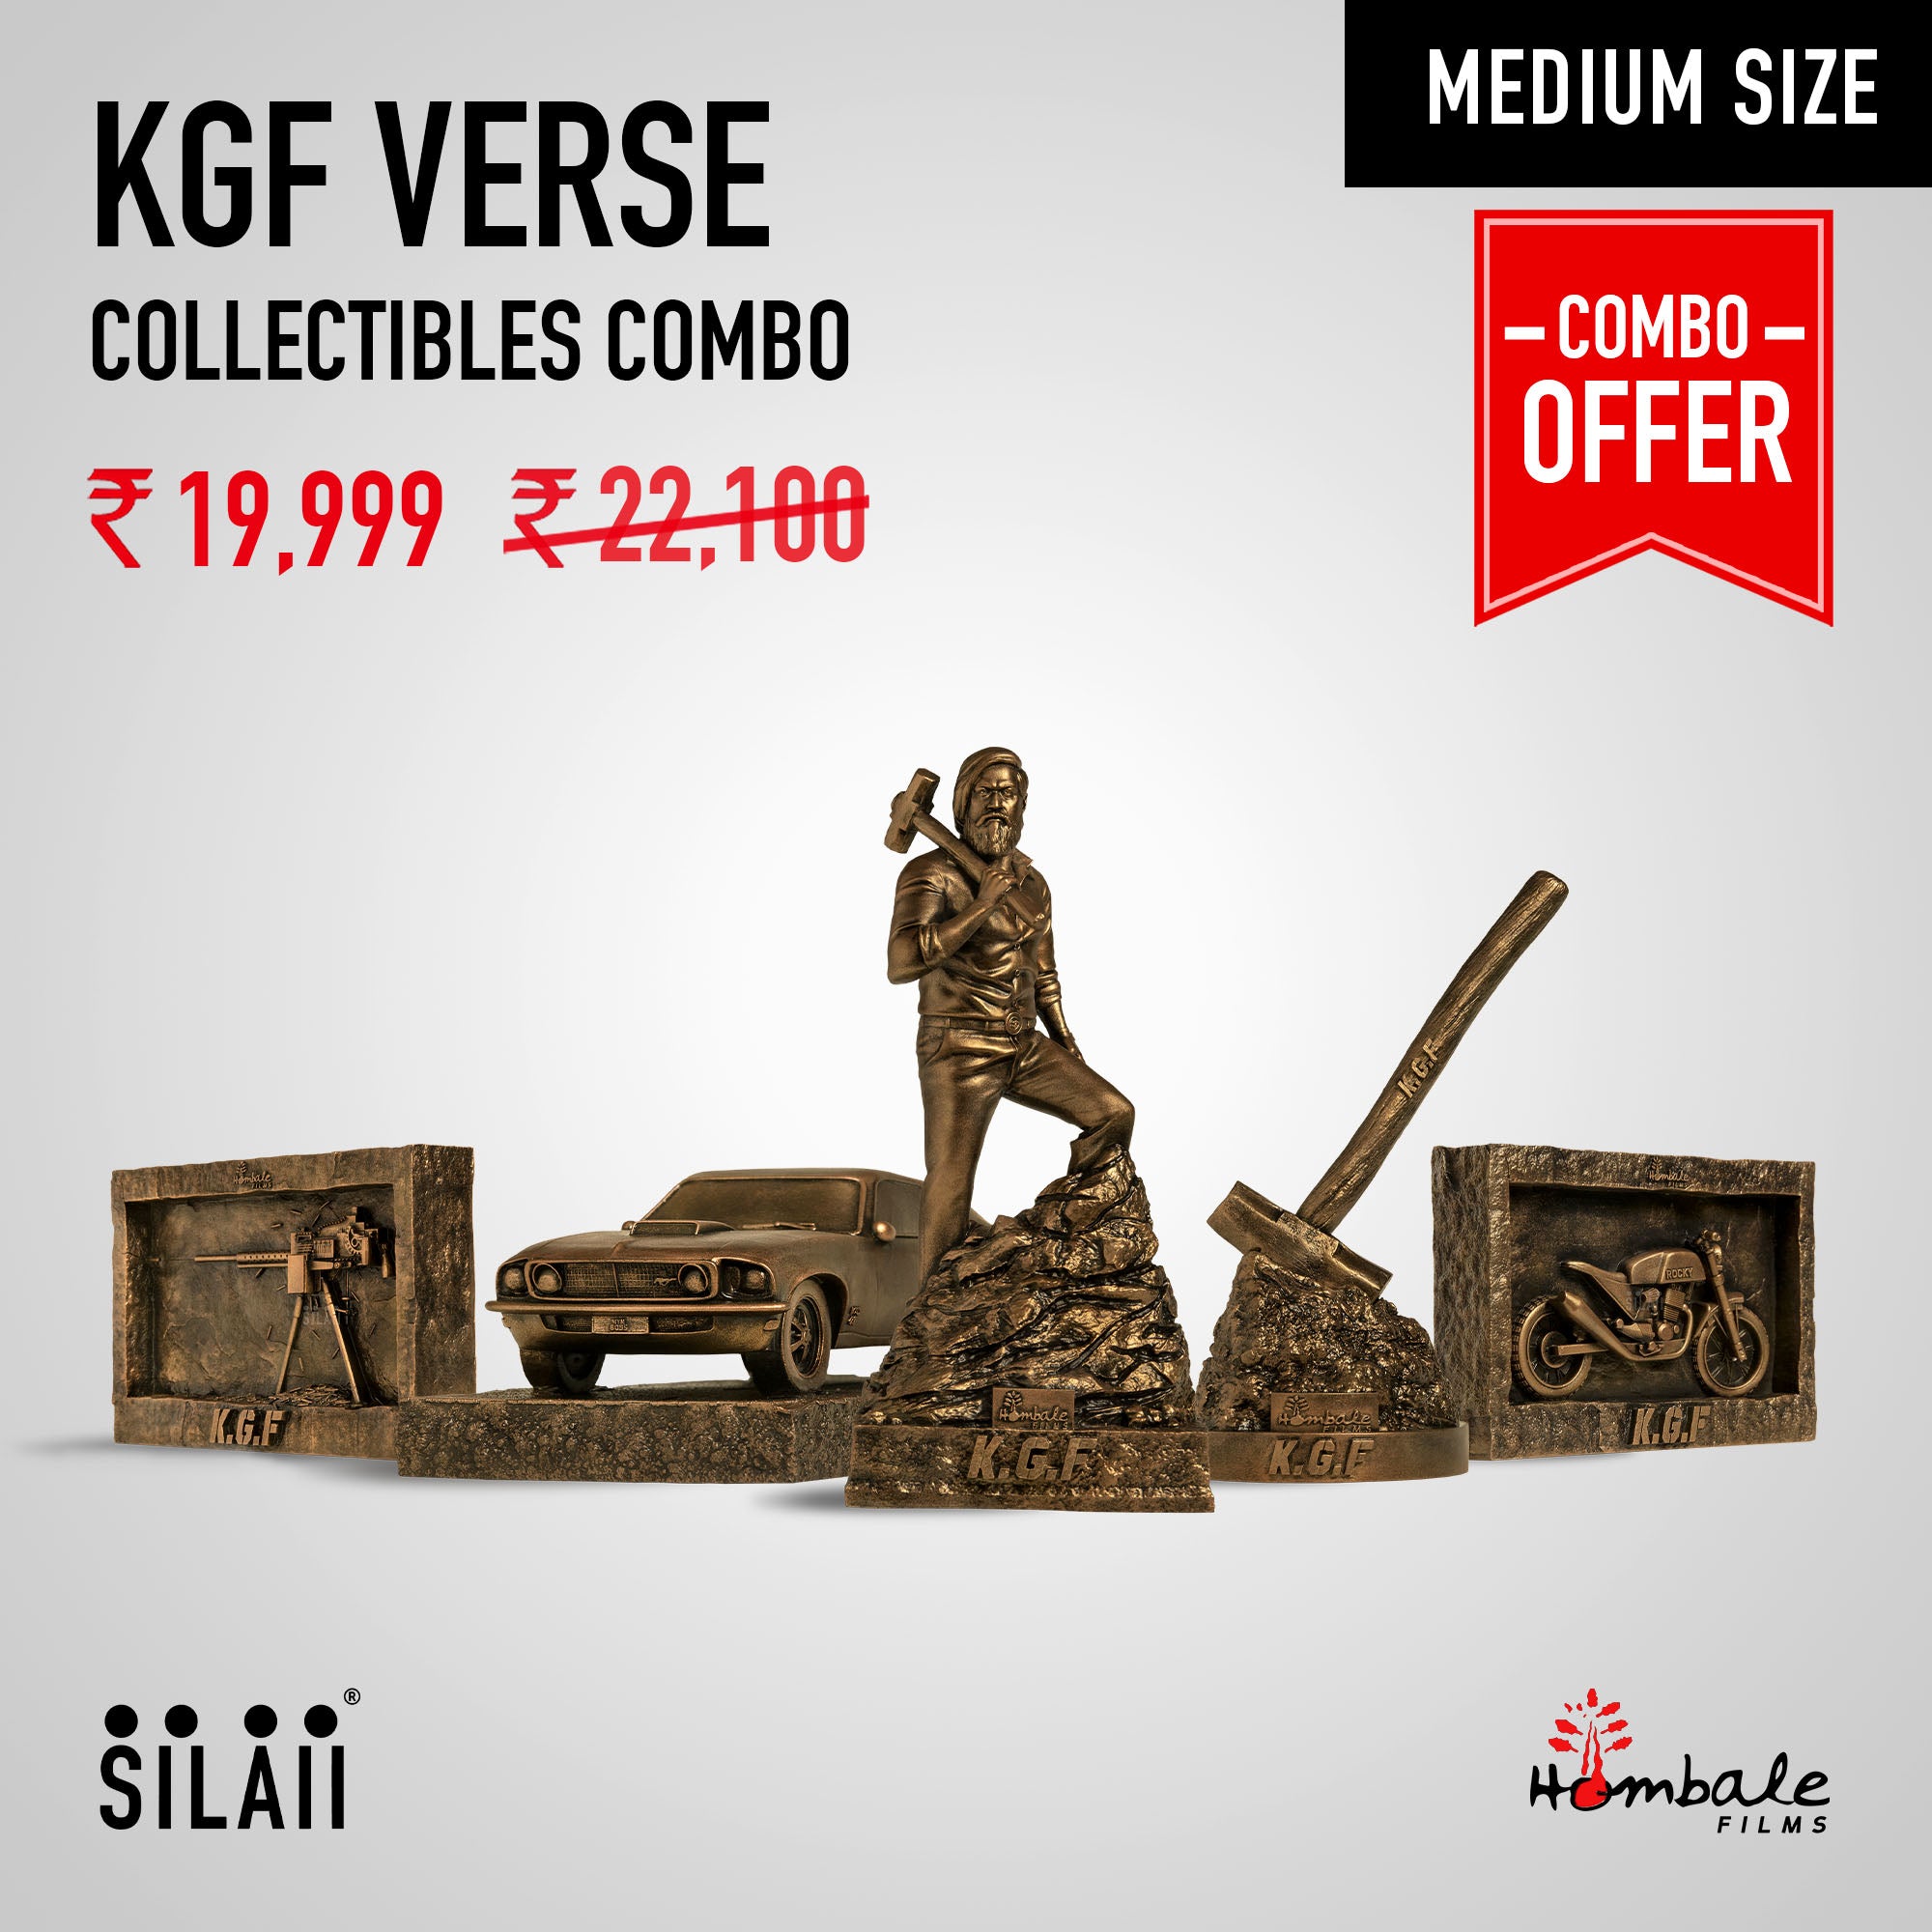 KGF Verse Collectibles Combo - 5 Sculptures